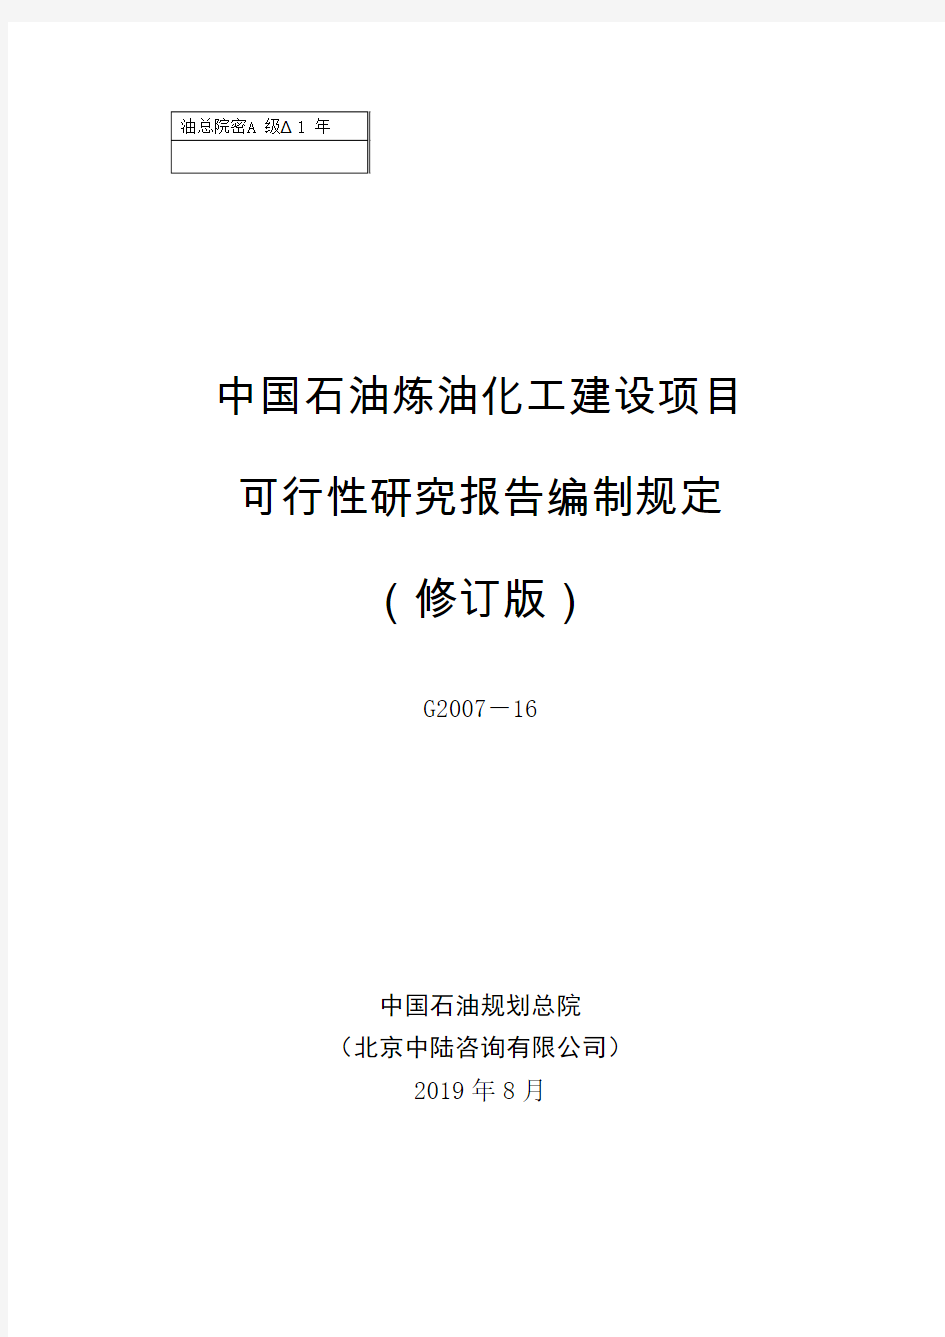 中国石油炼油化工建设项目可性研究报告编制规定(2014年修订版)